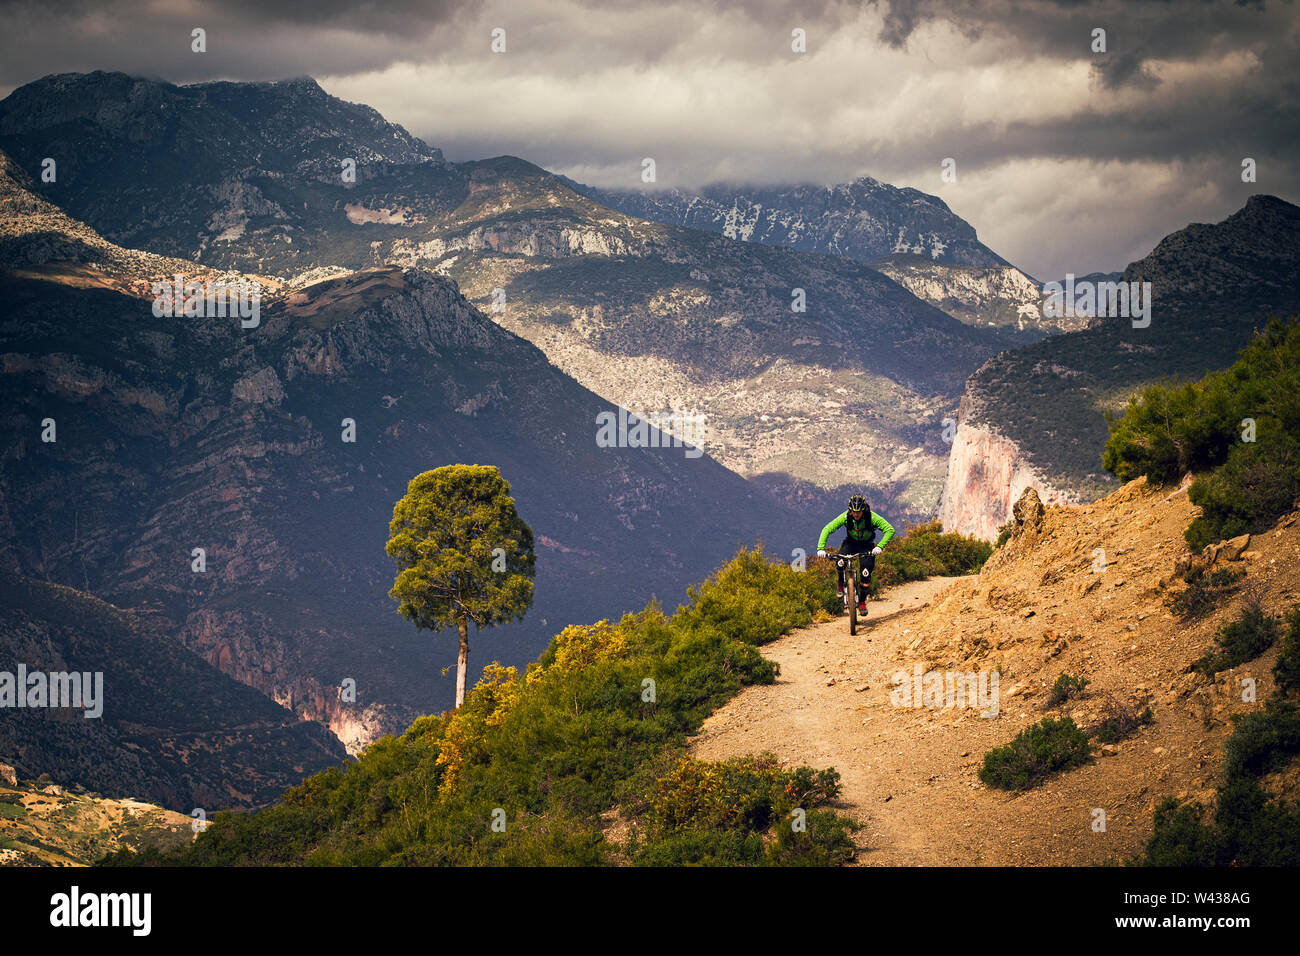 Un homme monte un vtt sur une piste de terre isolée dans les montagnes de l'Atlas. De hautes montagnes et rainclouds en arrière-plan. Banque D'Images